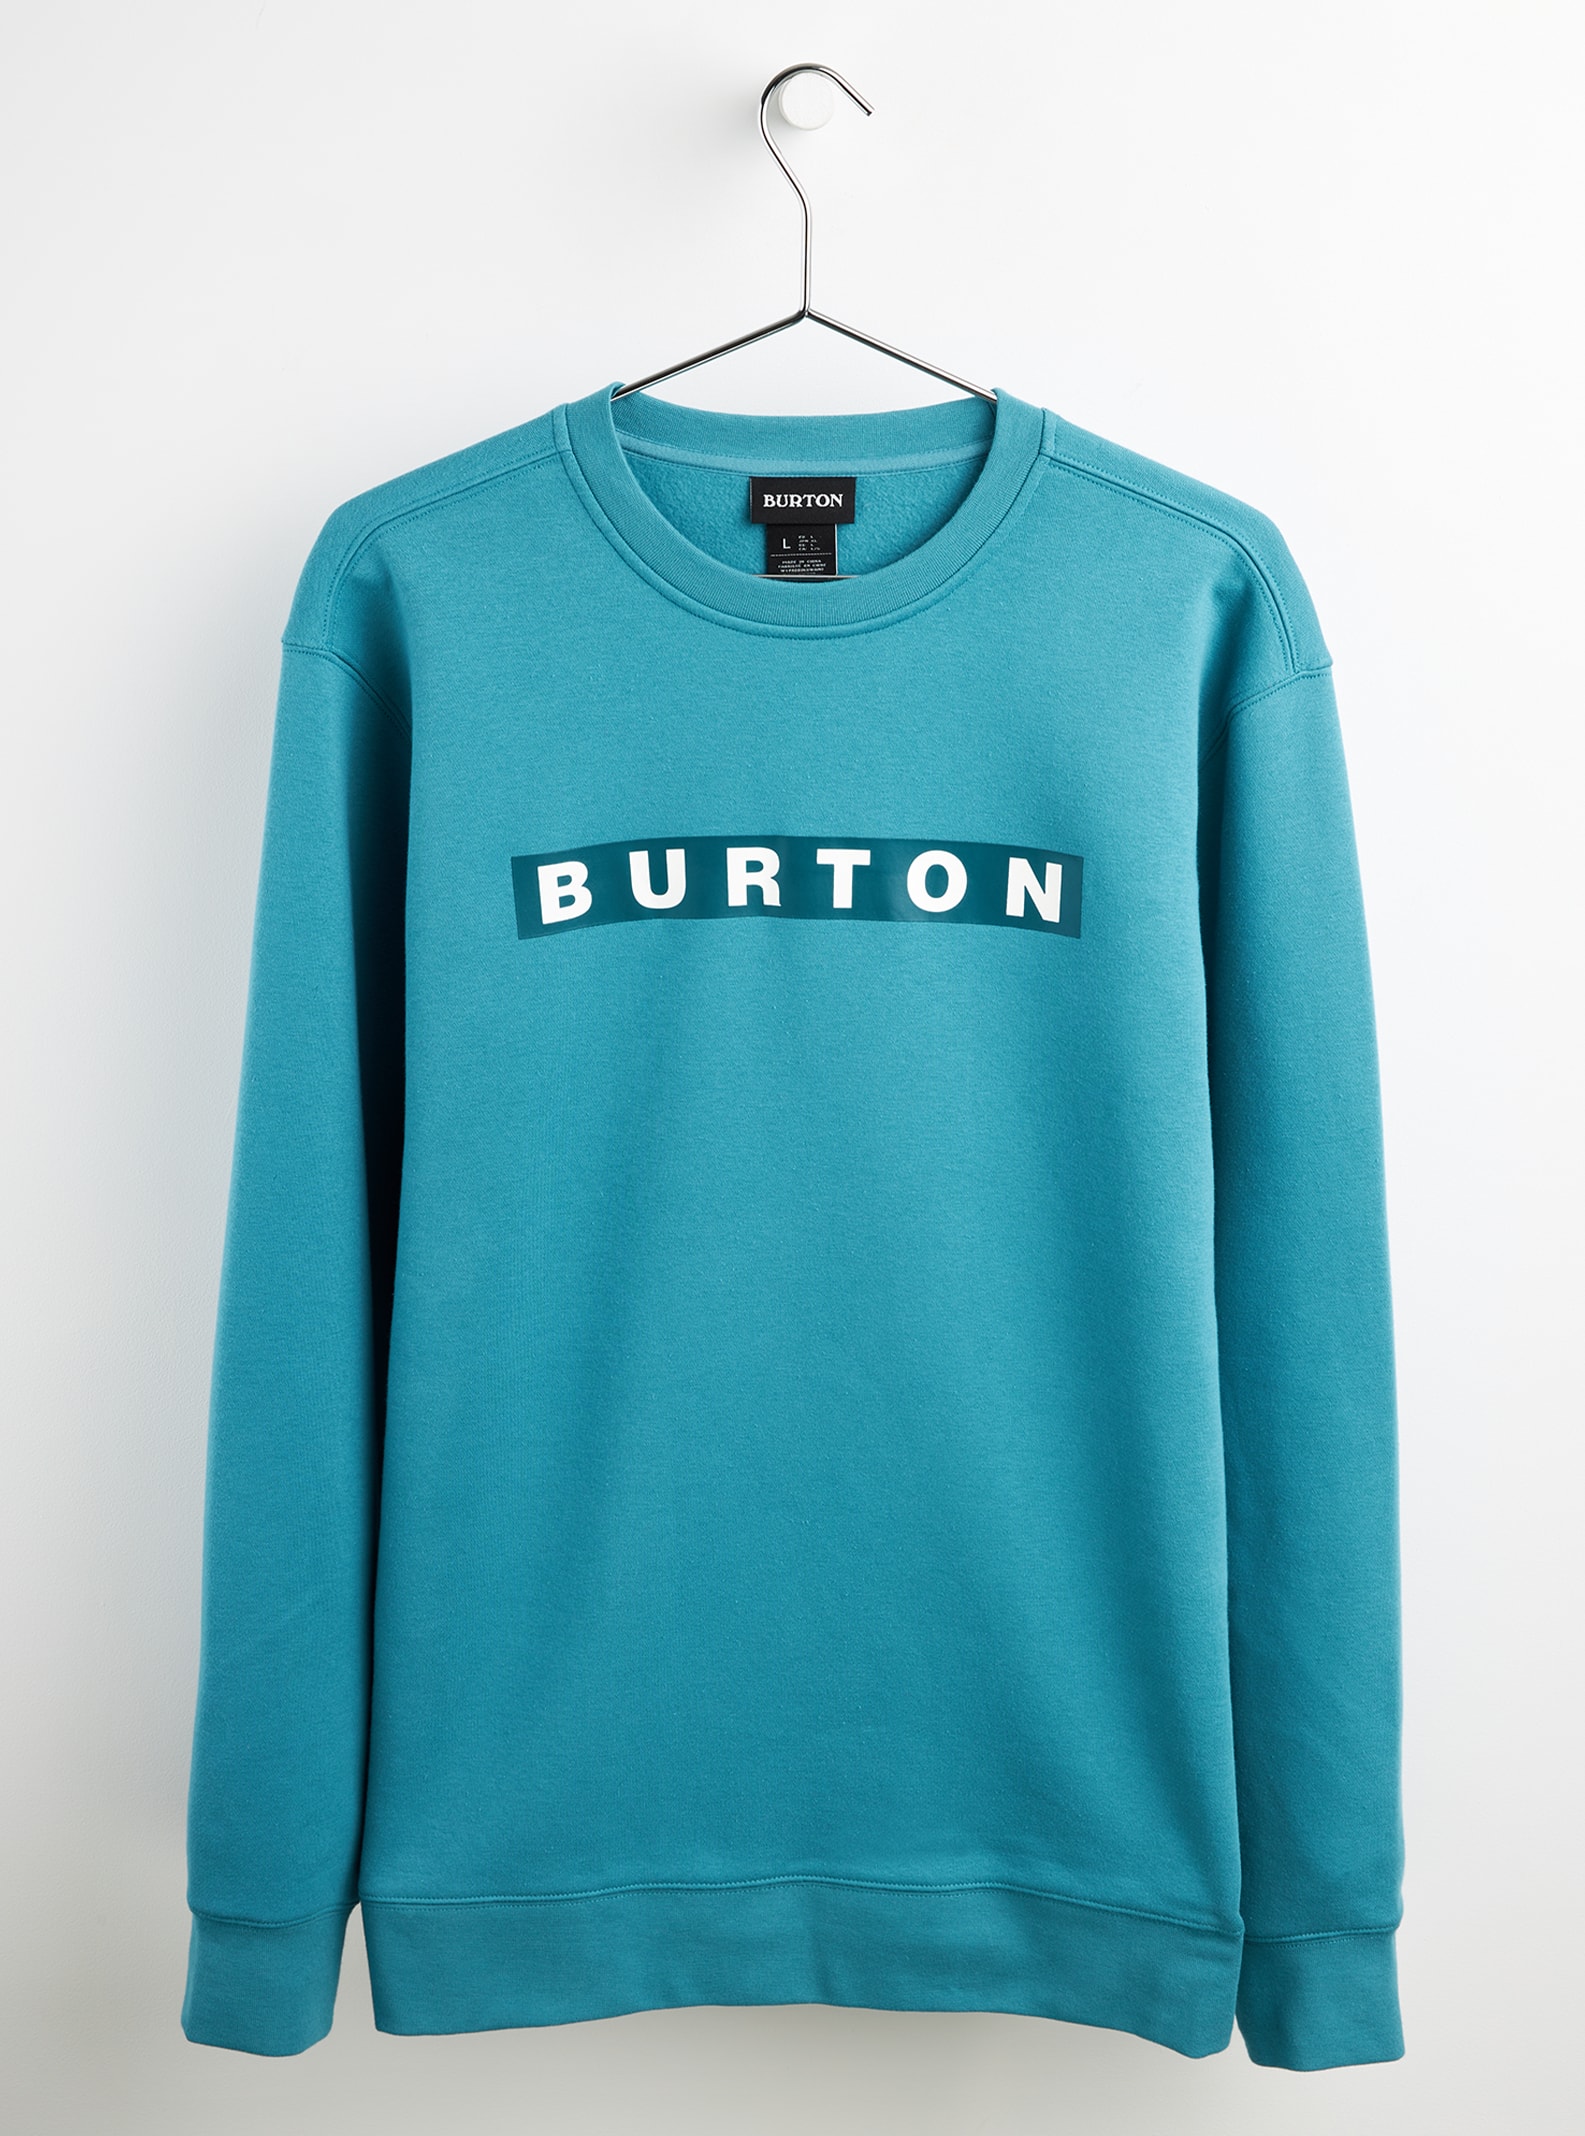 Burton Vault Crew Sweatshirt, XS